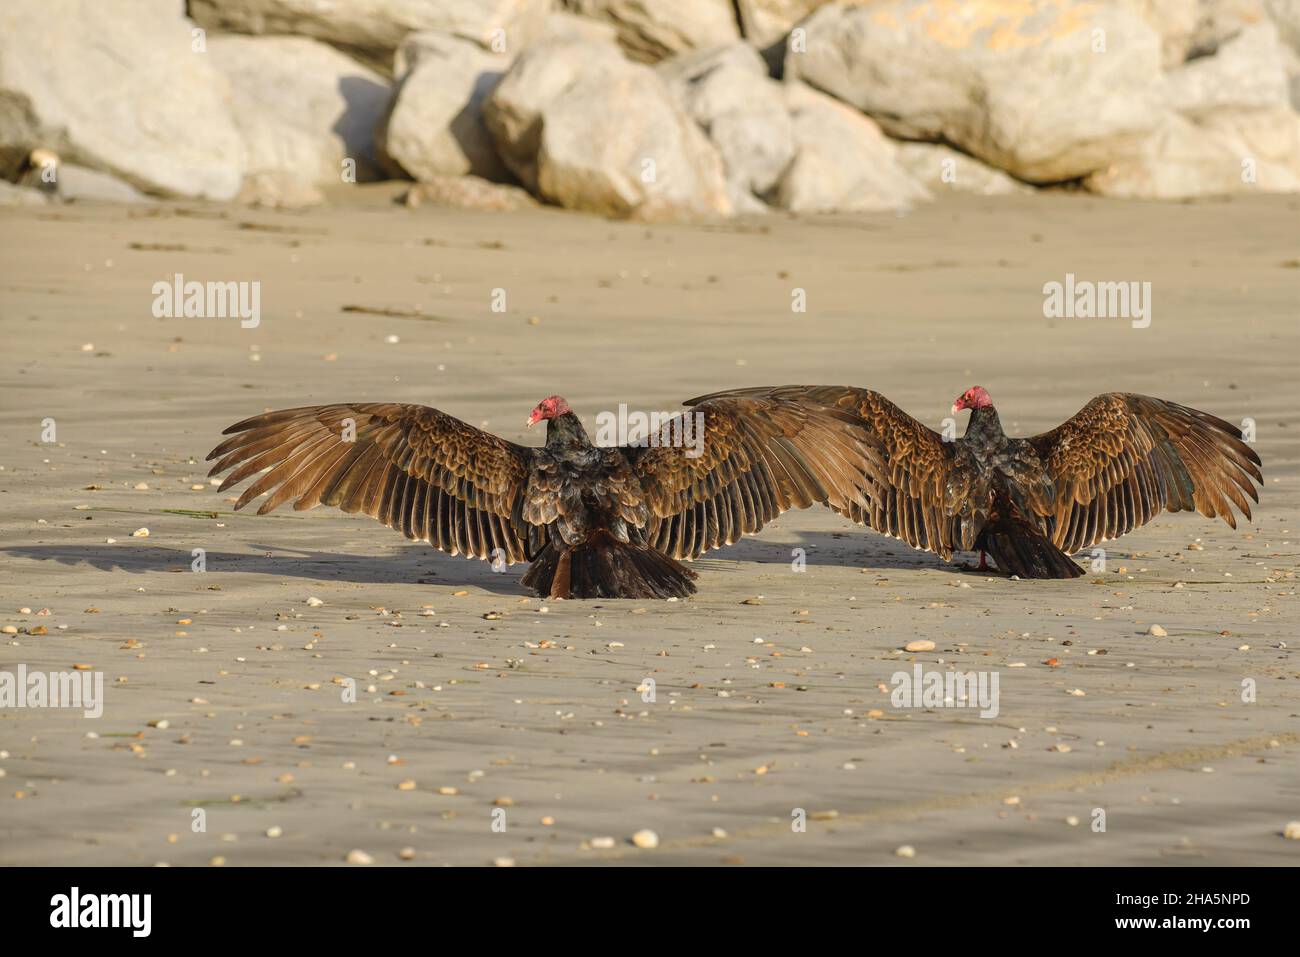 Les vautours de dinde assis sur la plage sèchent leurs ailes au soleil Banque D'Images